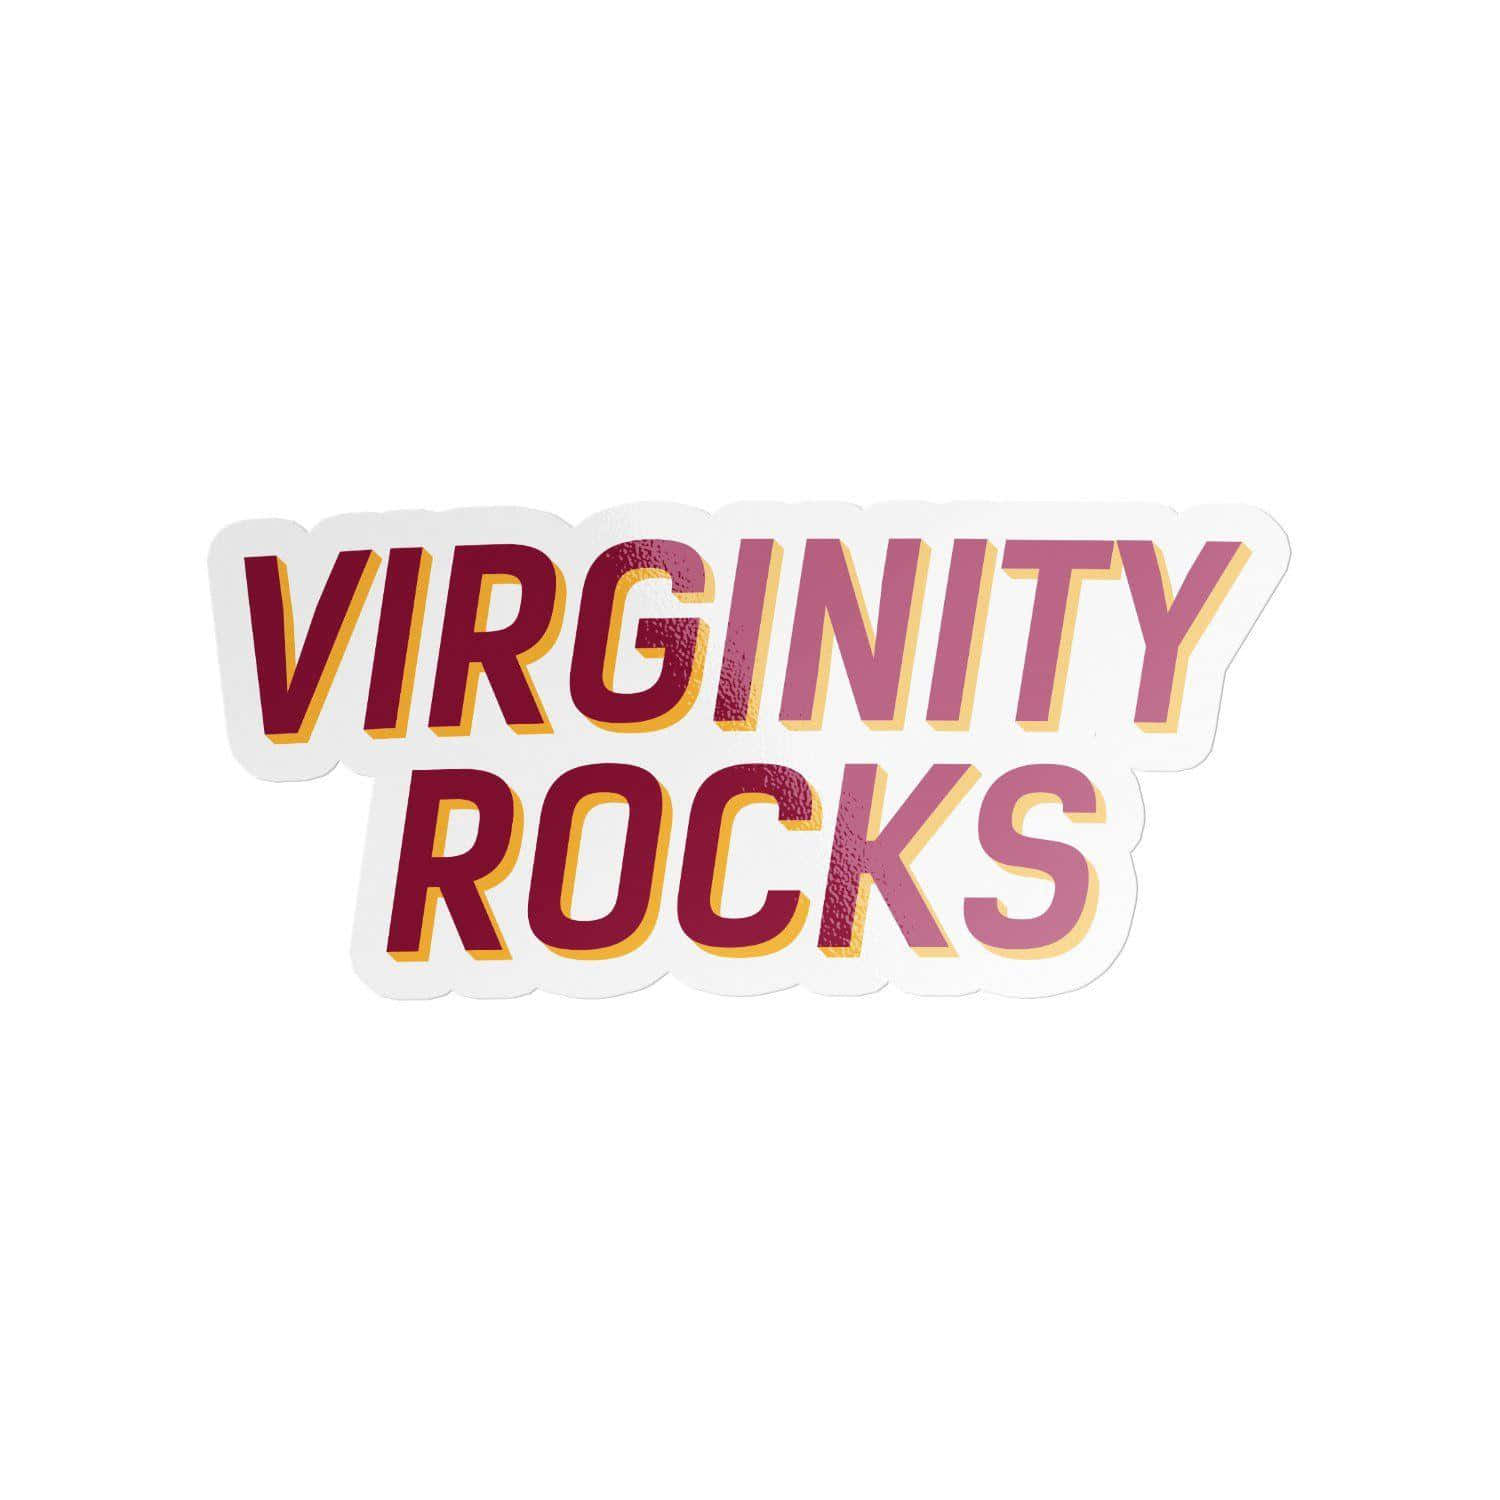 Virginity Rocks Sticker Design Wallpaper